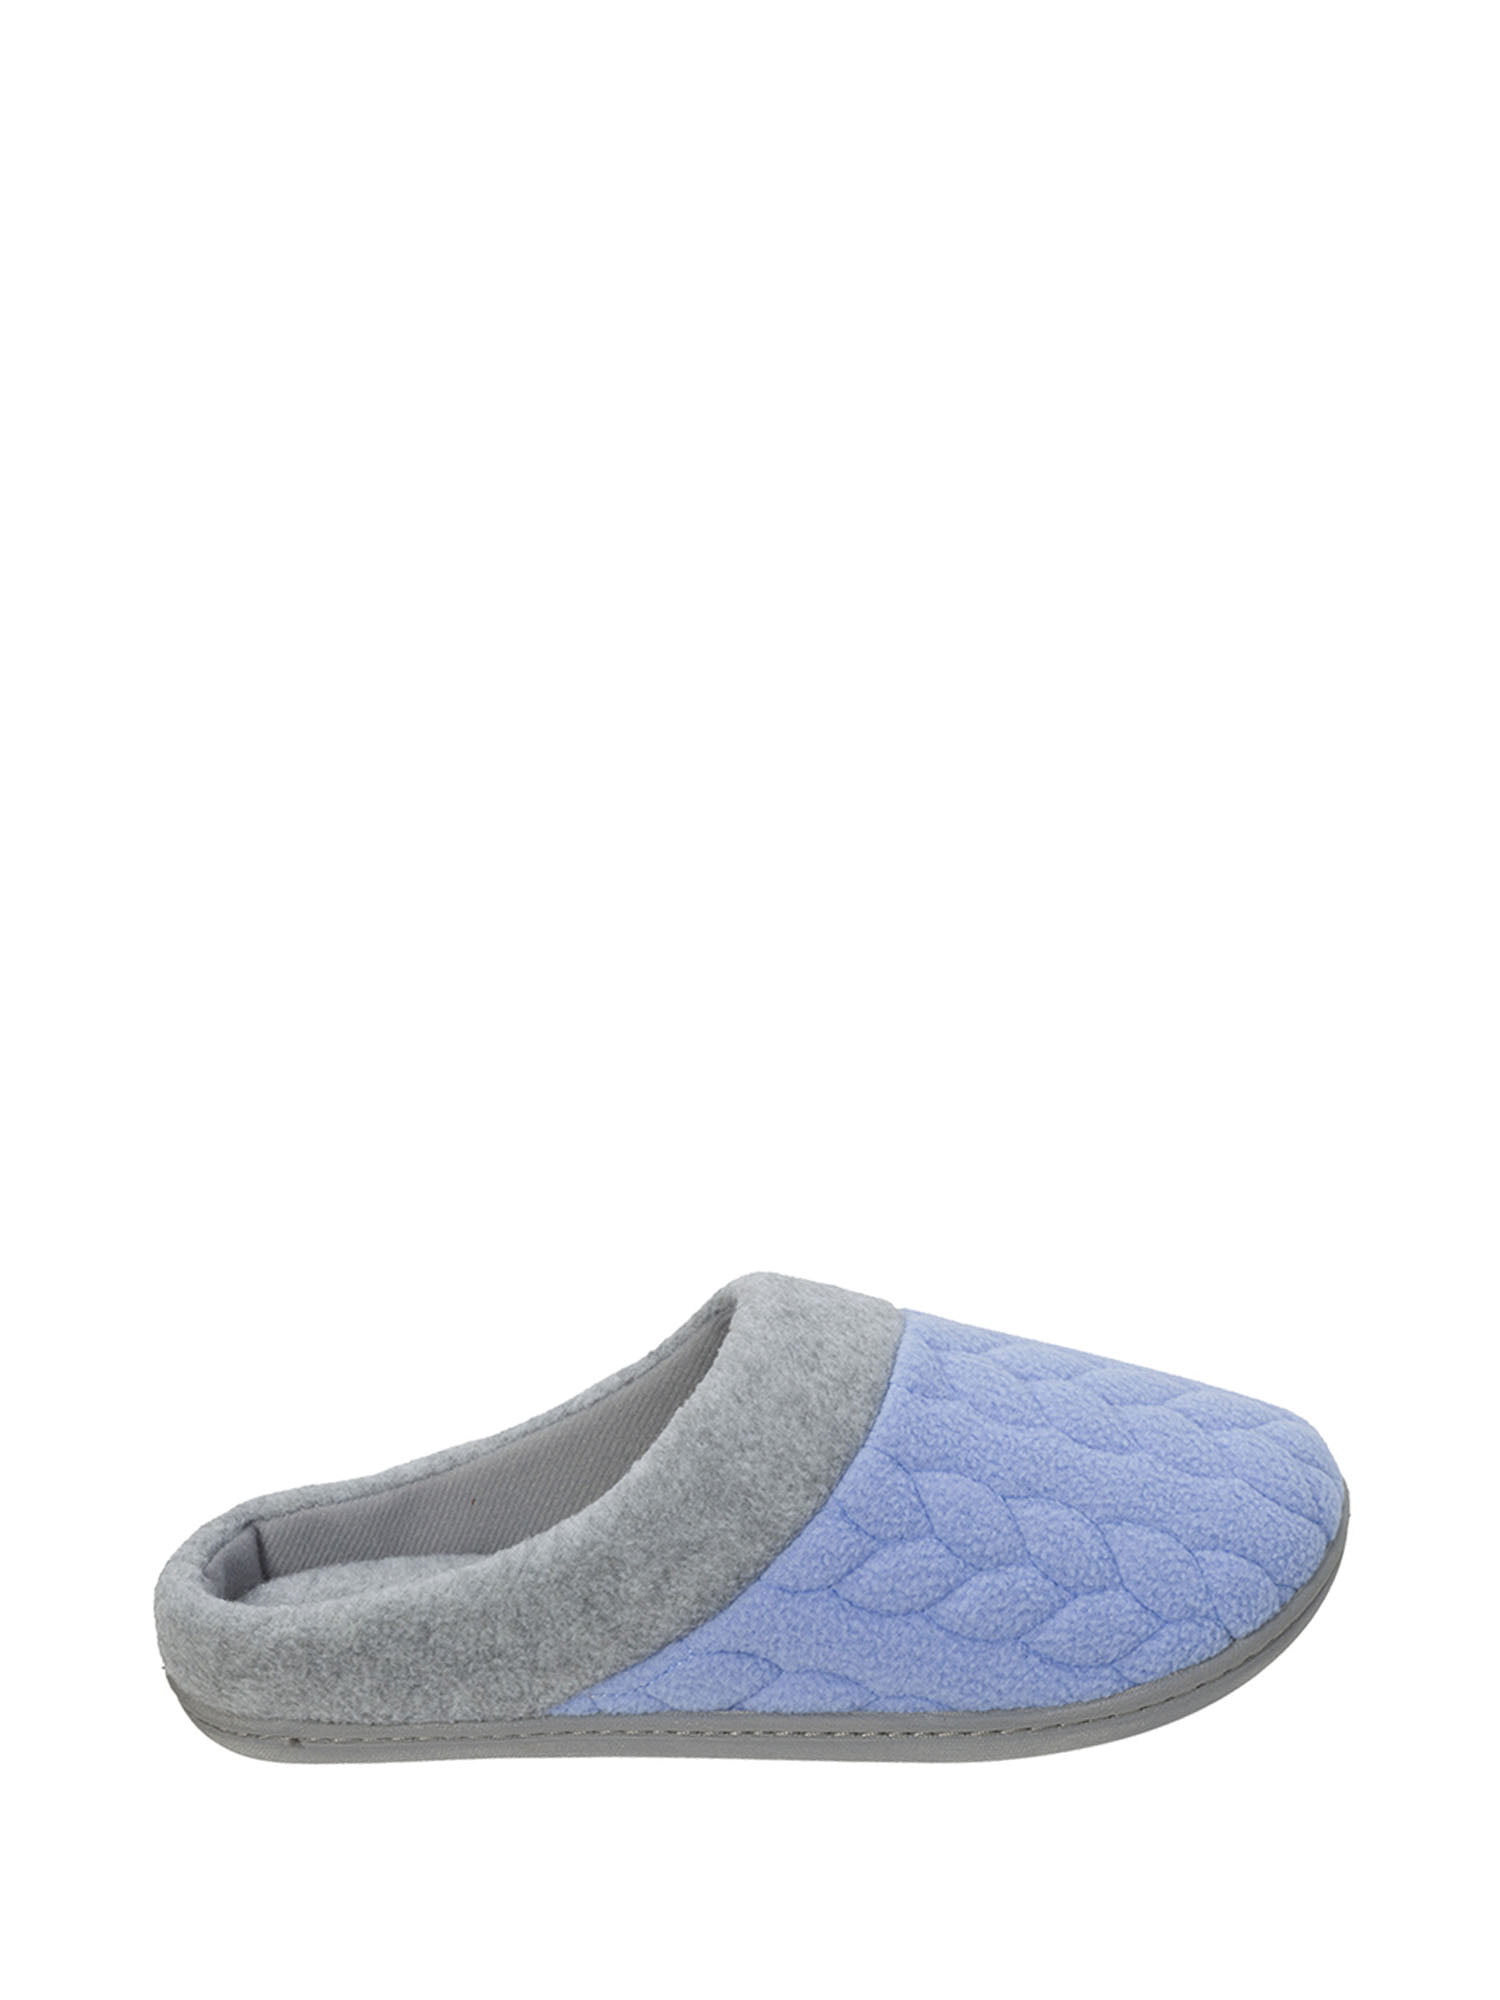 dearfoam summer slippers